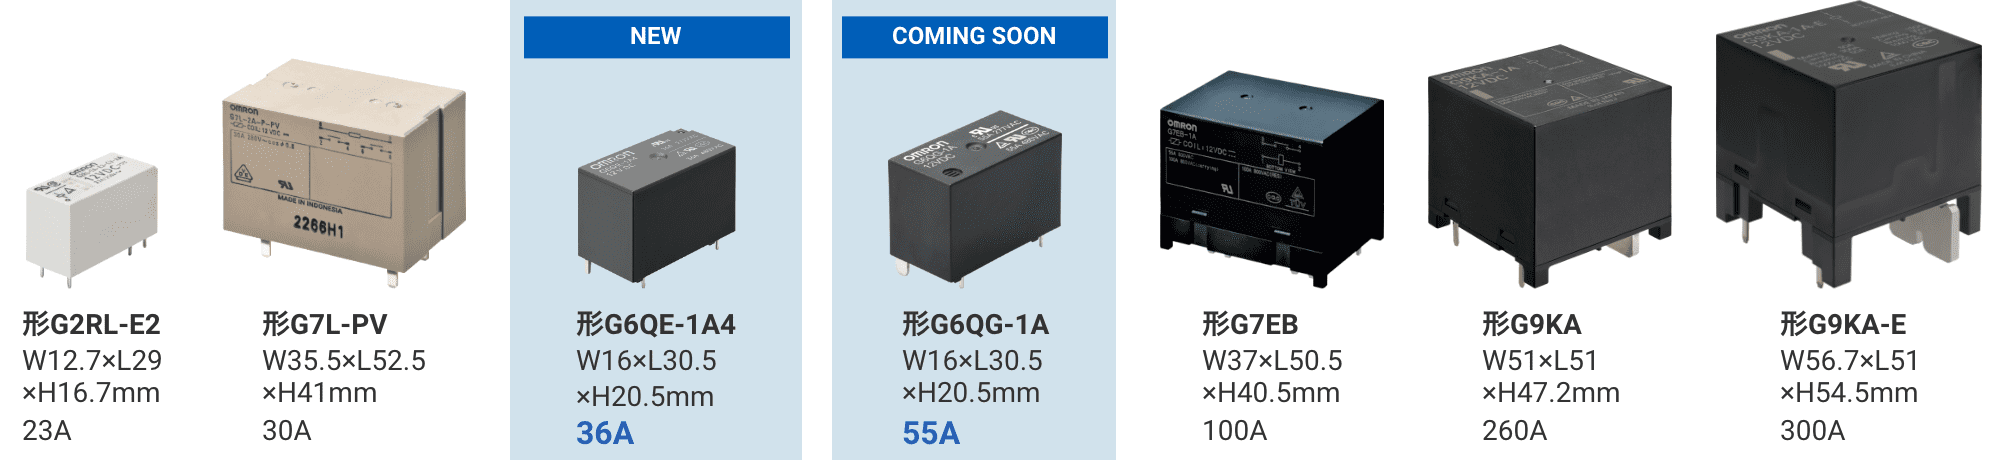 形G2RL-E2: W12.7×L29×H16.7mm 23A/形G7L-PV: W35.5×L52.5×H41mm 30A/(NEW)形G6QE-1A4: W16×L30.5×H20.5mm 36A/(COMING SOON)形G6QG-1A: W16×L30.5×H20.5mm 55A/形G7EB: W37×L50.5×H40.5mm 100A/形G9KA: W51×L51×H47.2mm 260A/形G9KA-E: W56.7×L51×H54.5mm 300A